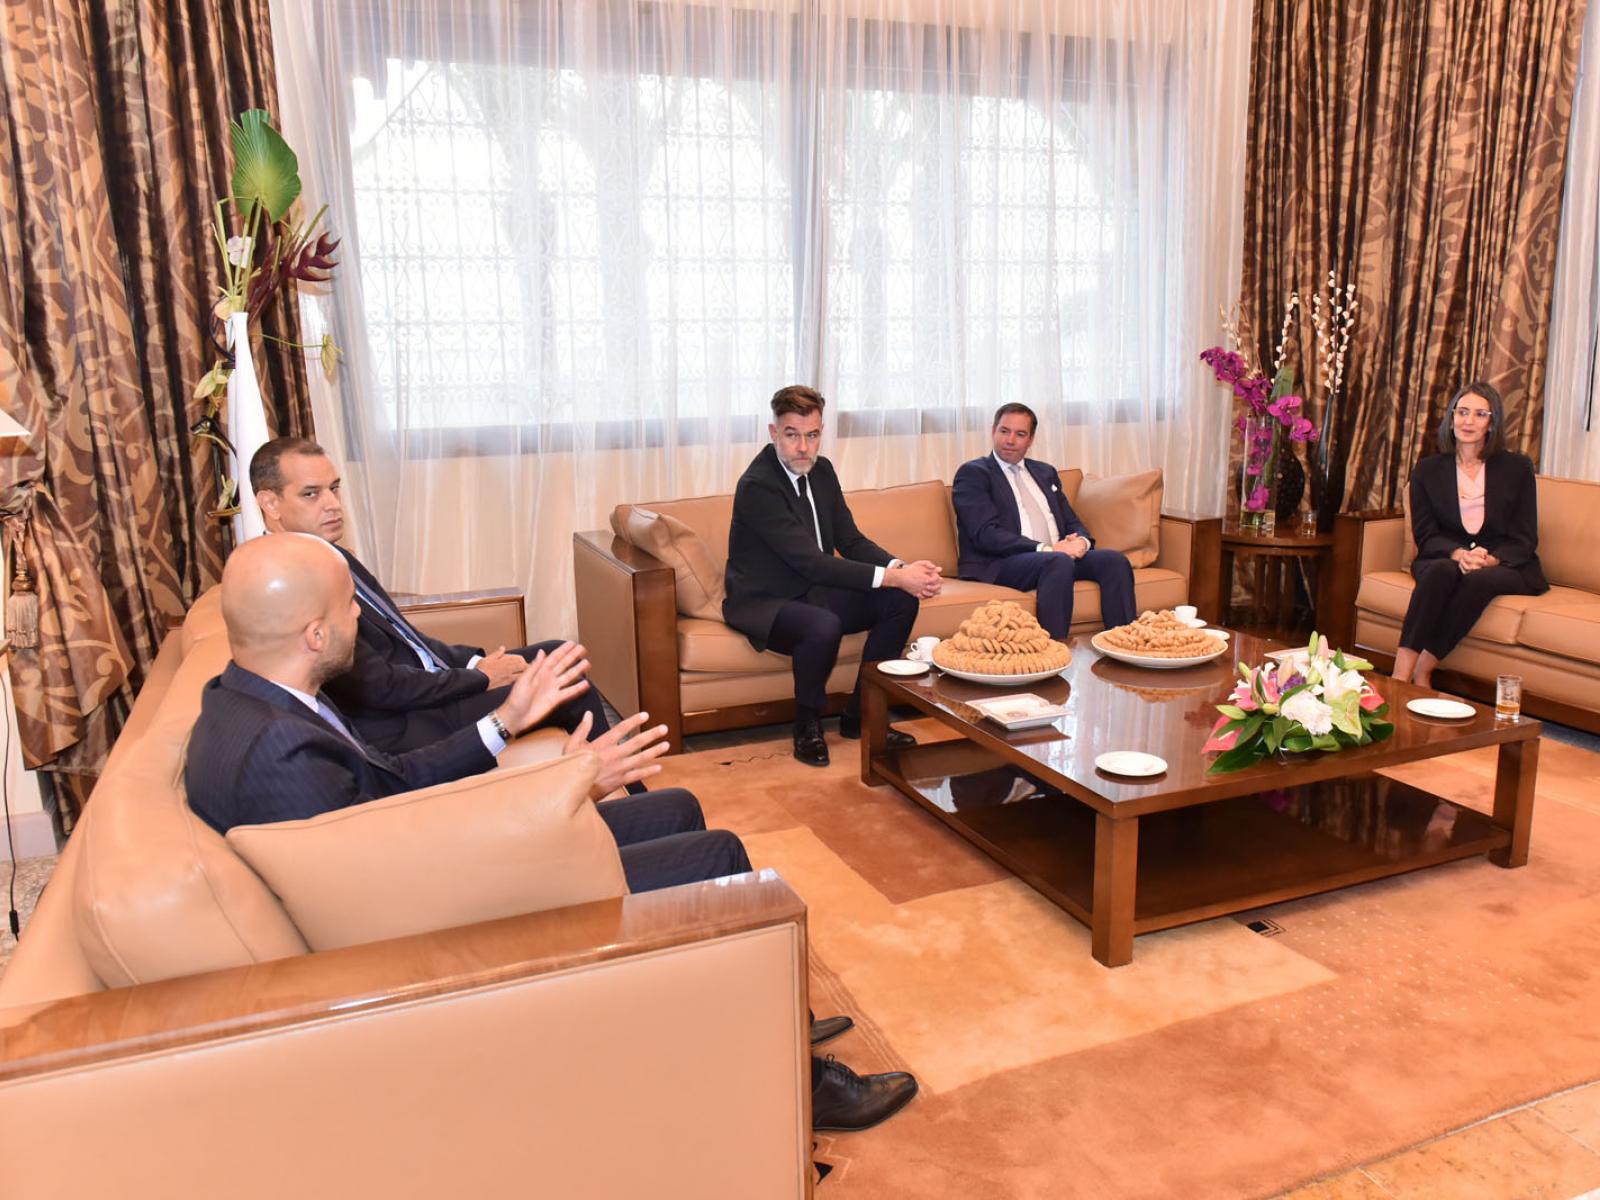 Le Prince et le ministre échangent avec la délégation marocaine